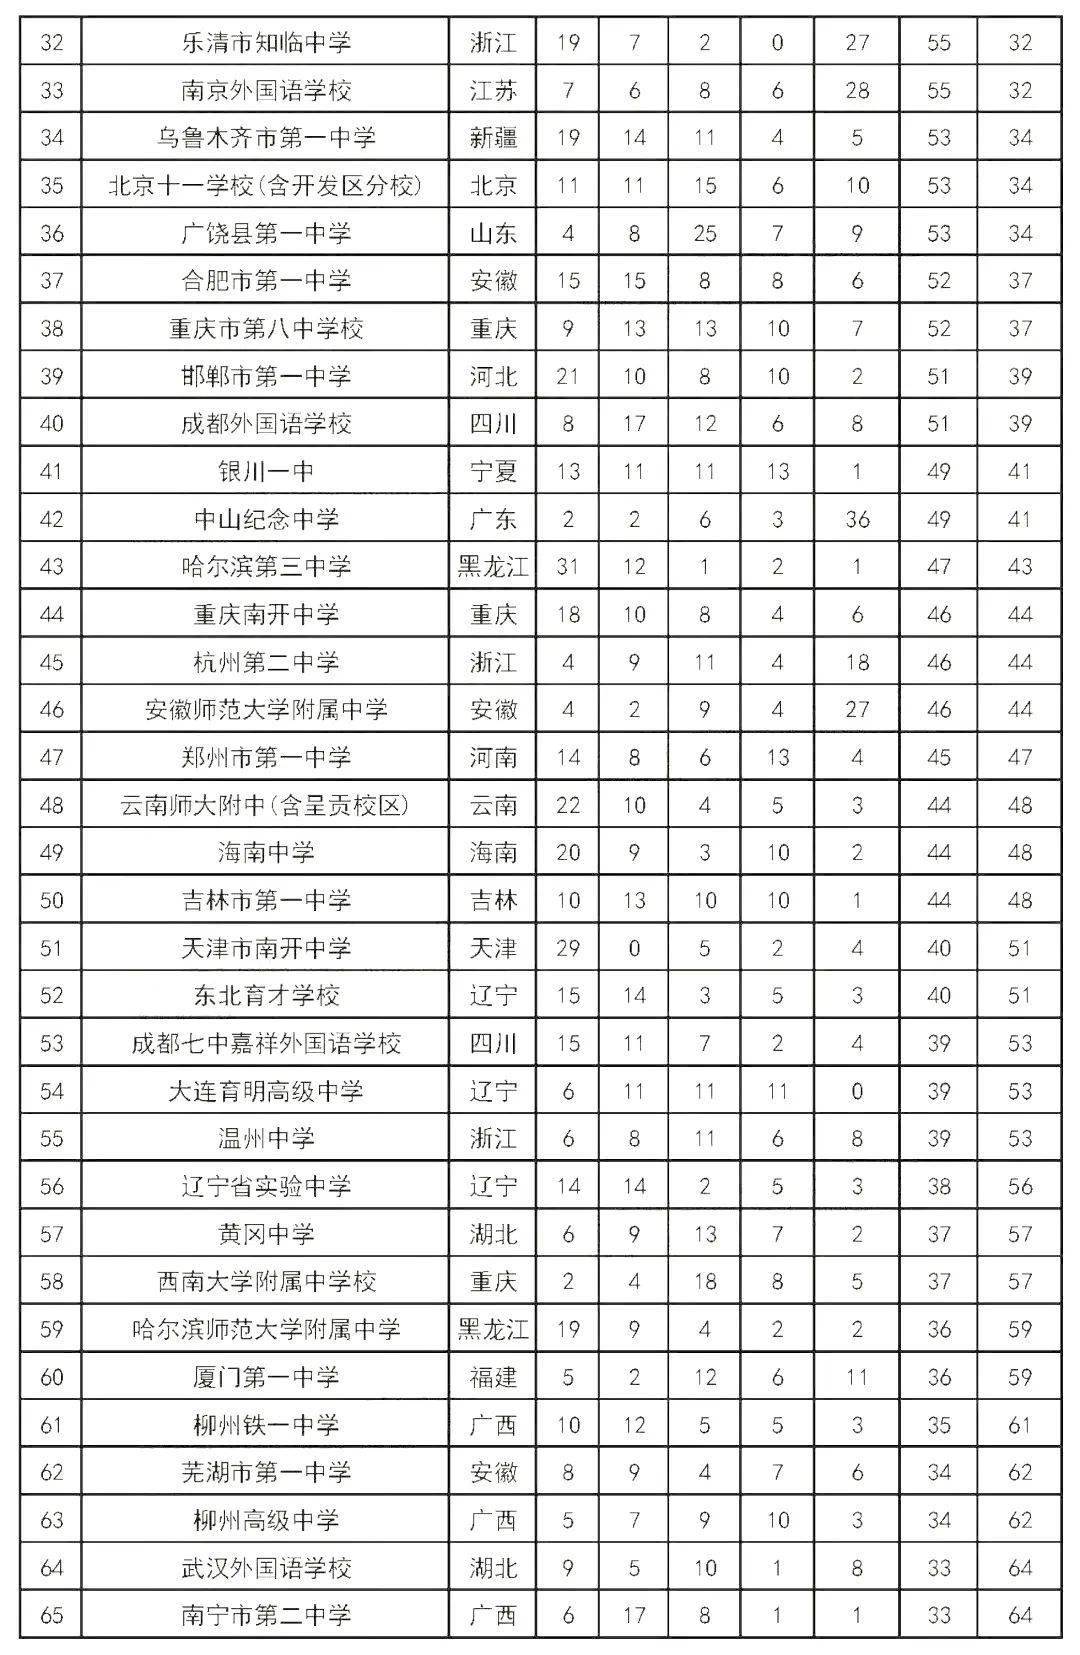 2020年全国职校排名_2020京领中国国际学校竞争力排行榜·广州城市榜正式